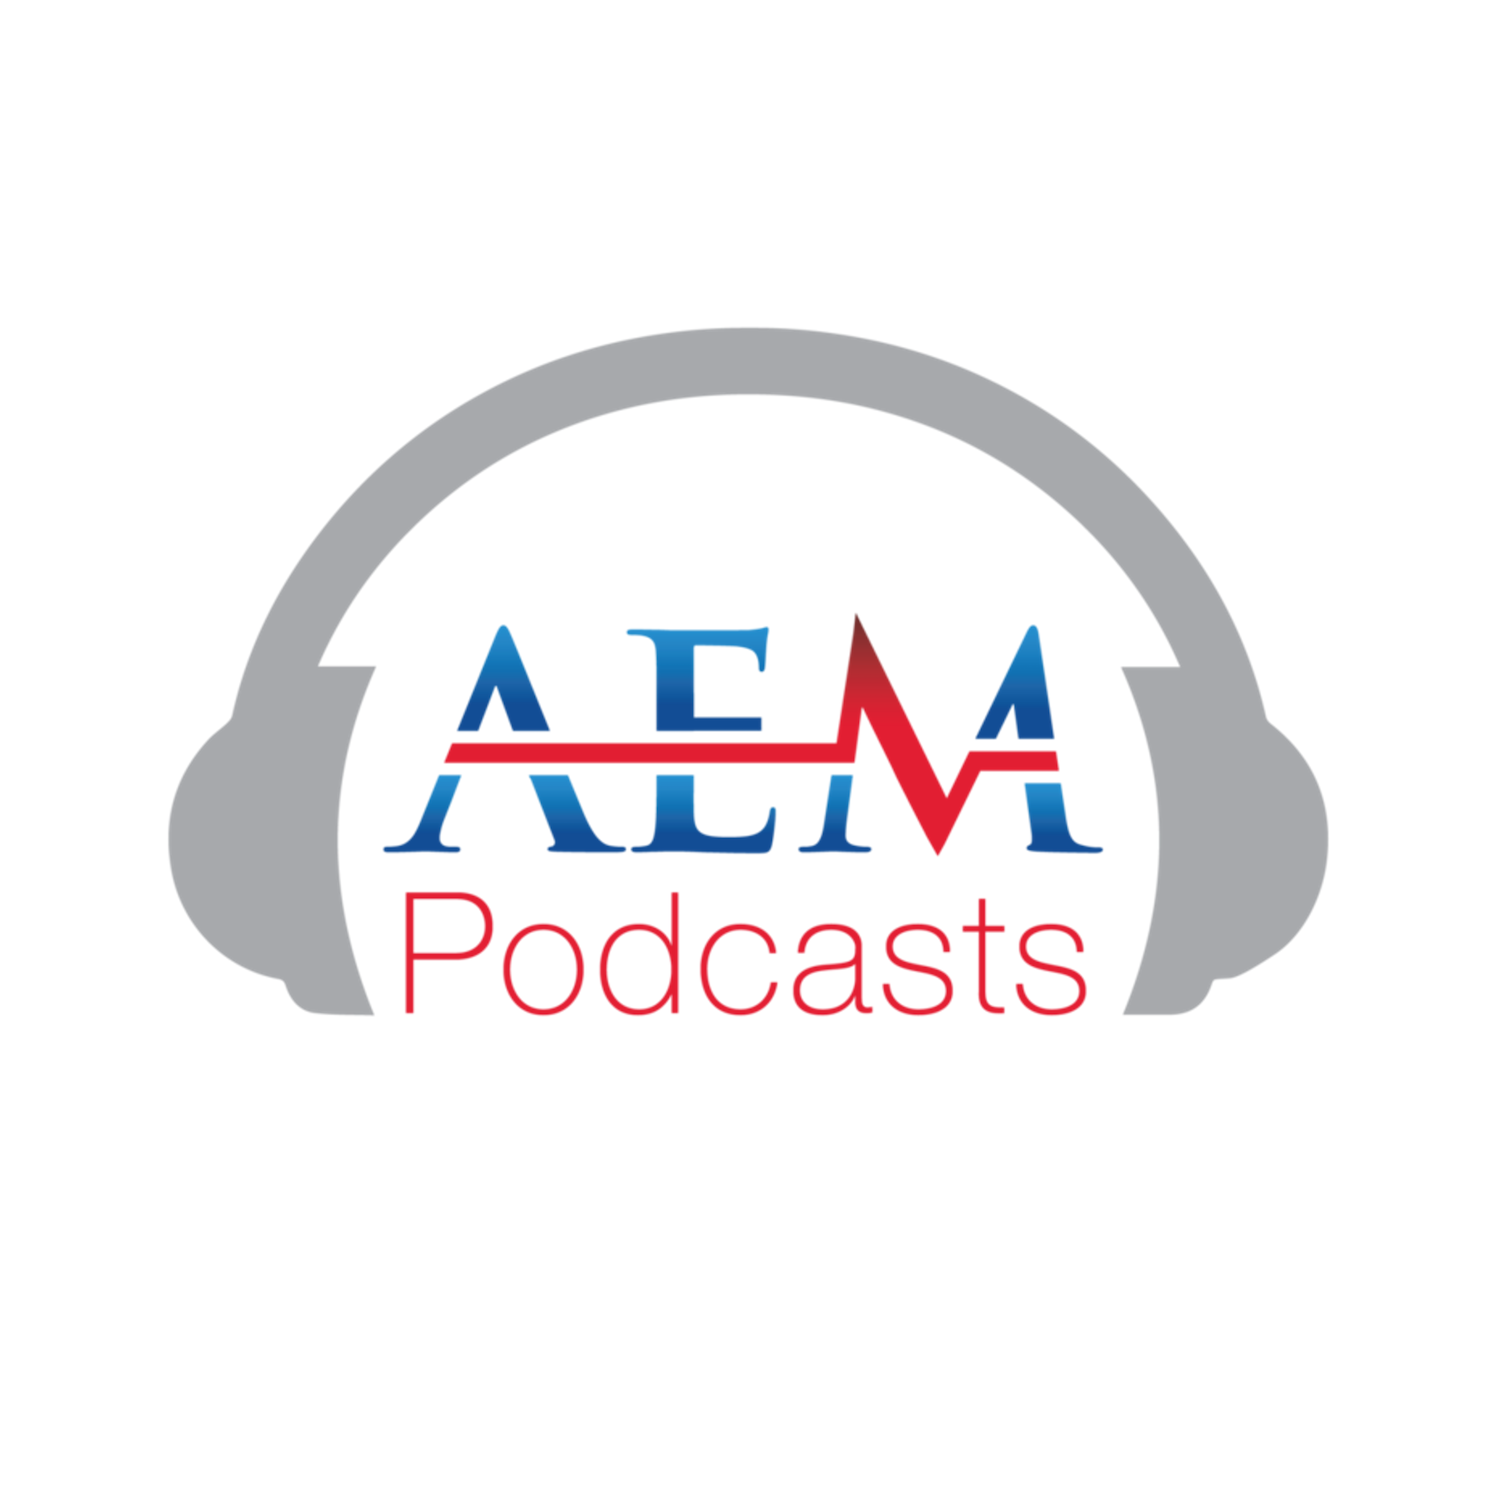 AEM Podcast logo 1500 width